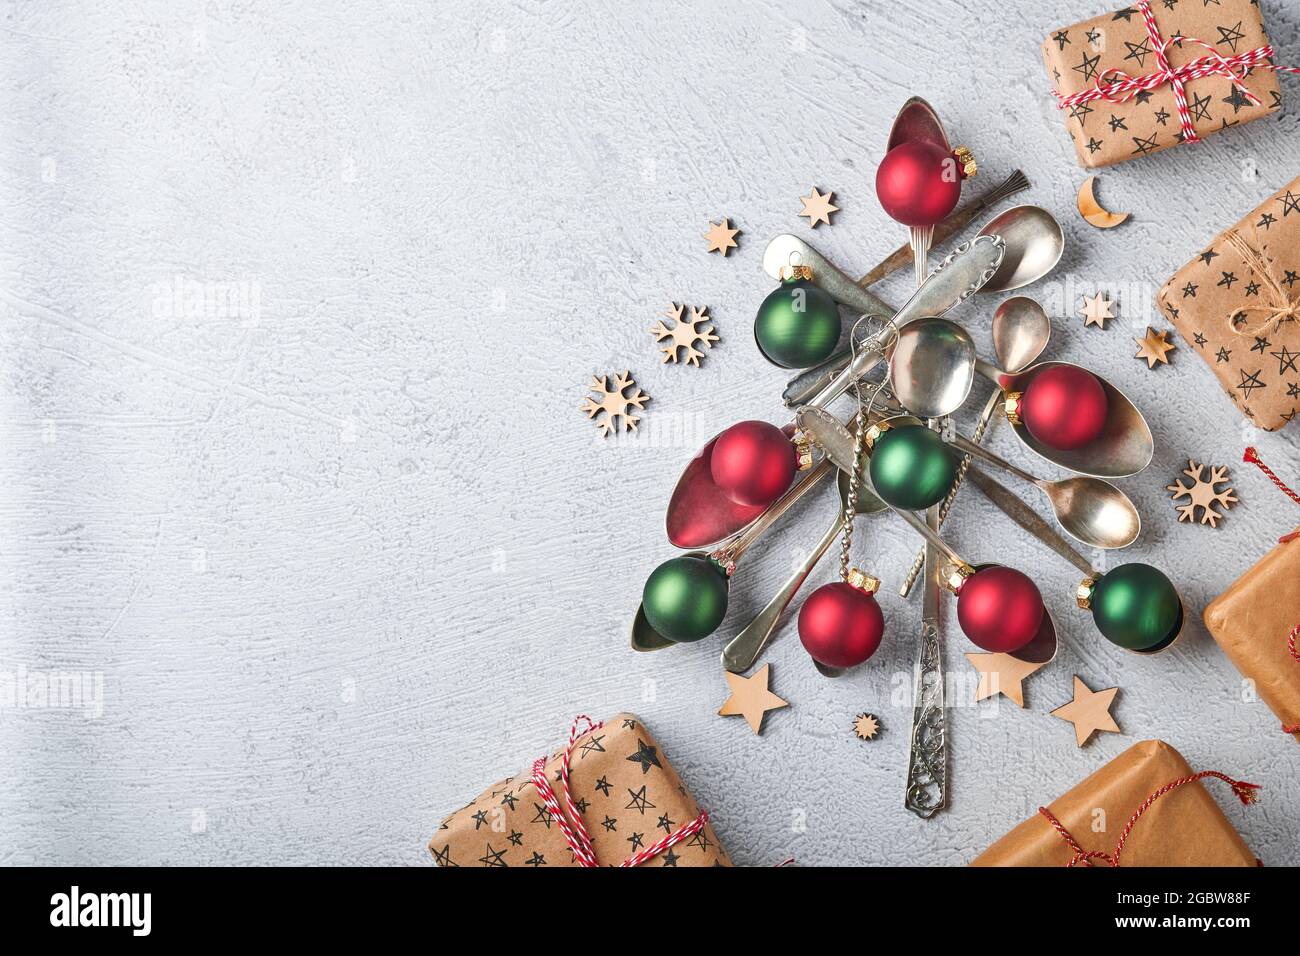 Árbol de Navidad hecho de cucharas antiguas o cubiertos con bolas de  Navidad rojas y verdes y cajas de regalos sobre fondo gris de piedra o  hormigón. Vista superior con Fotografía de